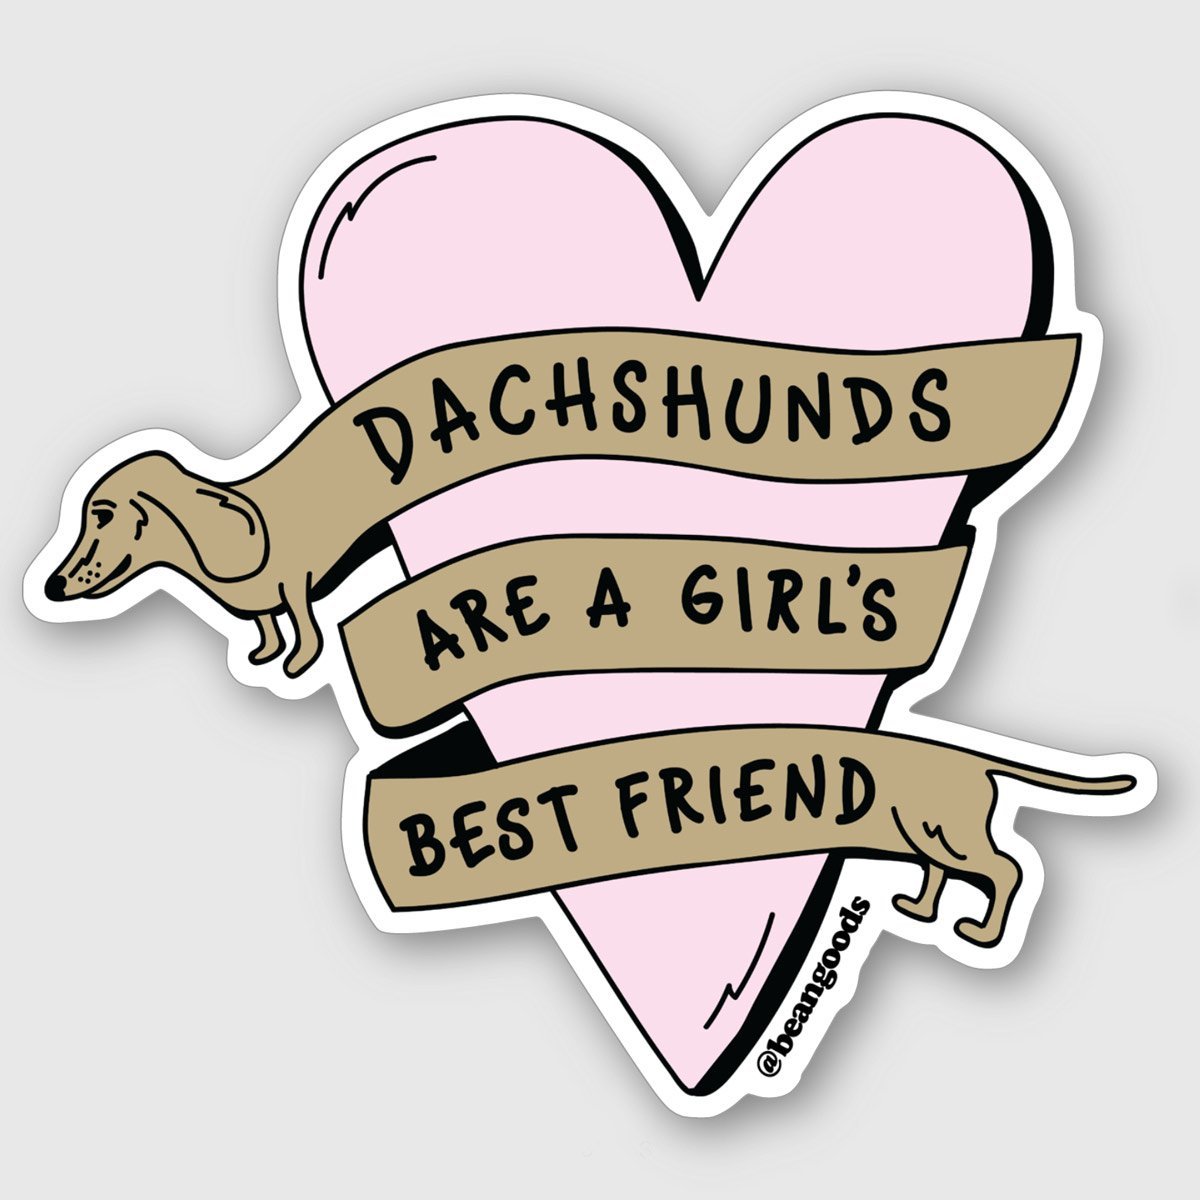 dachshunds are a girl's best friend sticker - BeanGoods